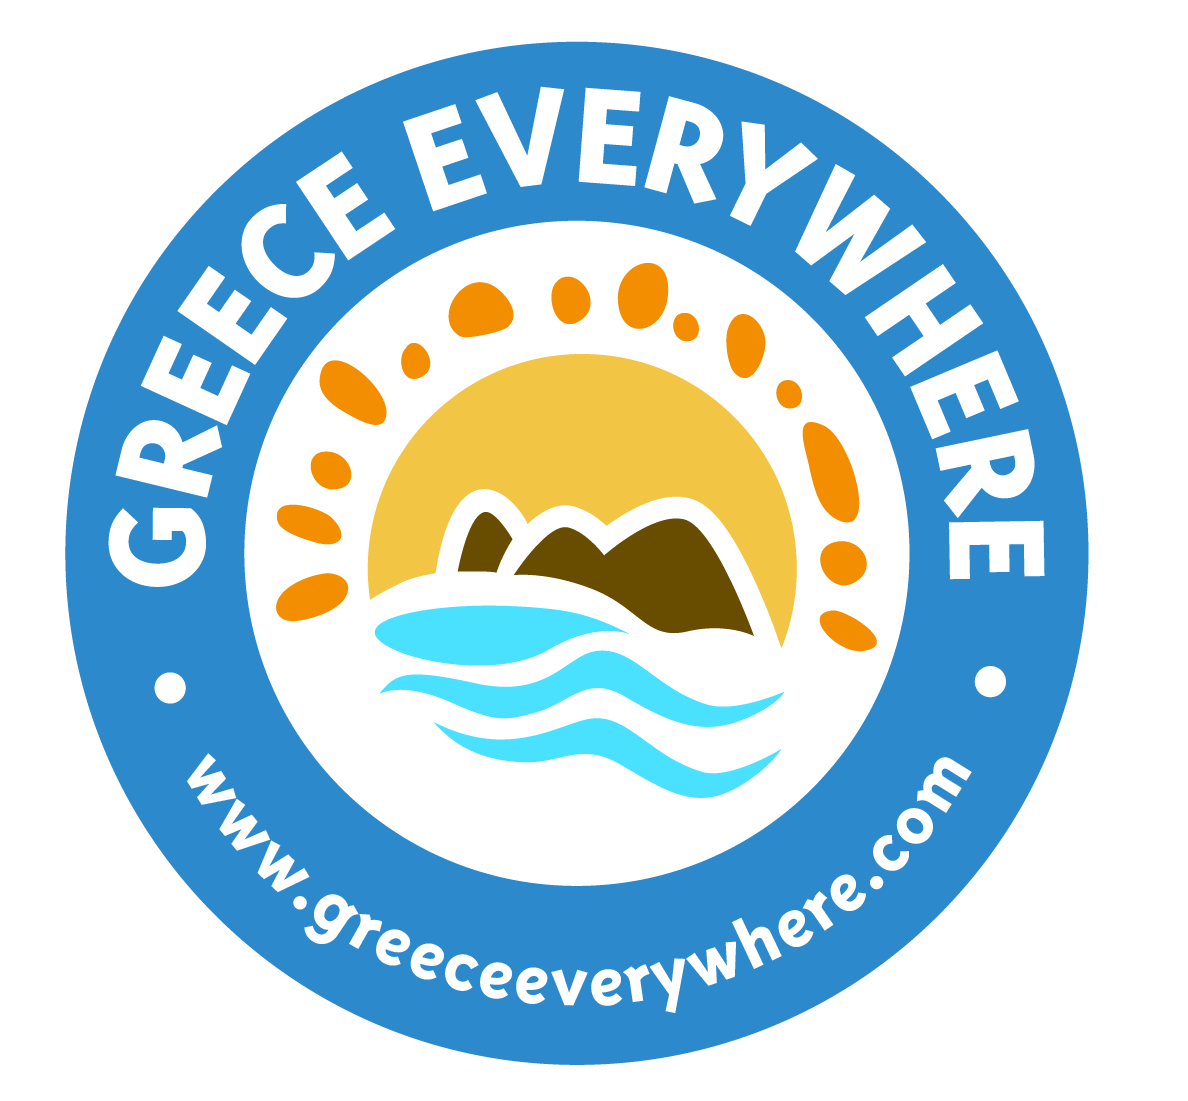 Η Ελλάδα παντού: μια προσπάθεια να φέρουμε τους Αμερικανούς πιο κοντά στον ελληνικό πολιτισμό